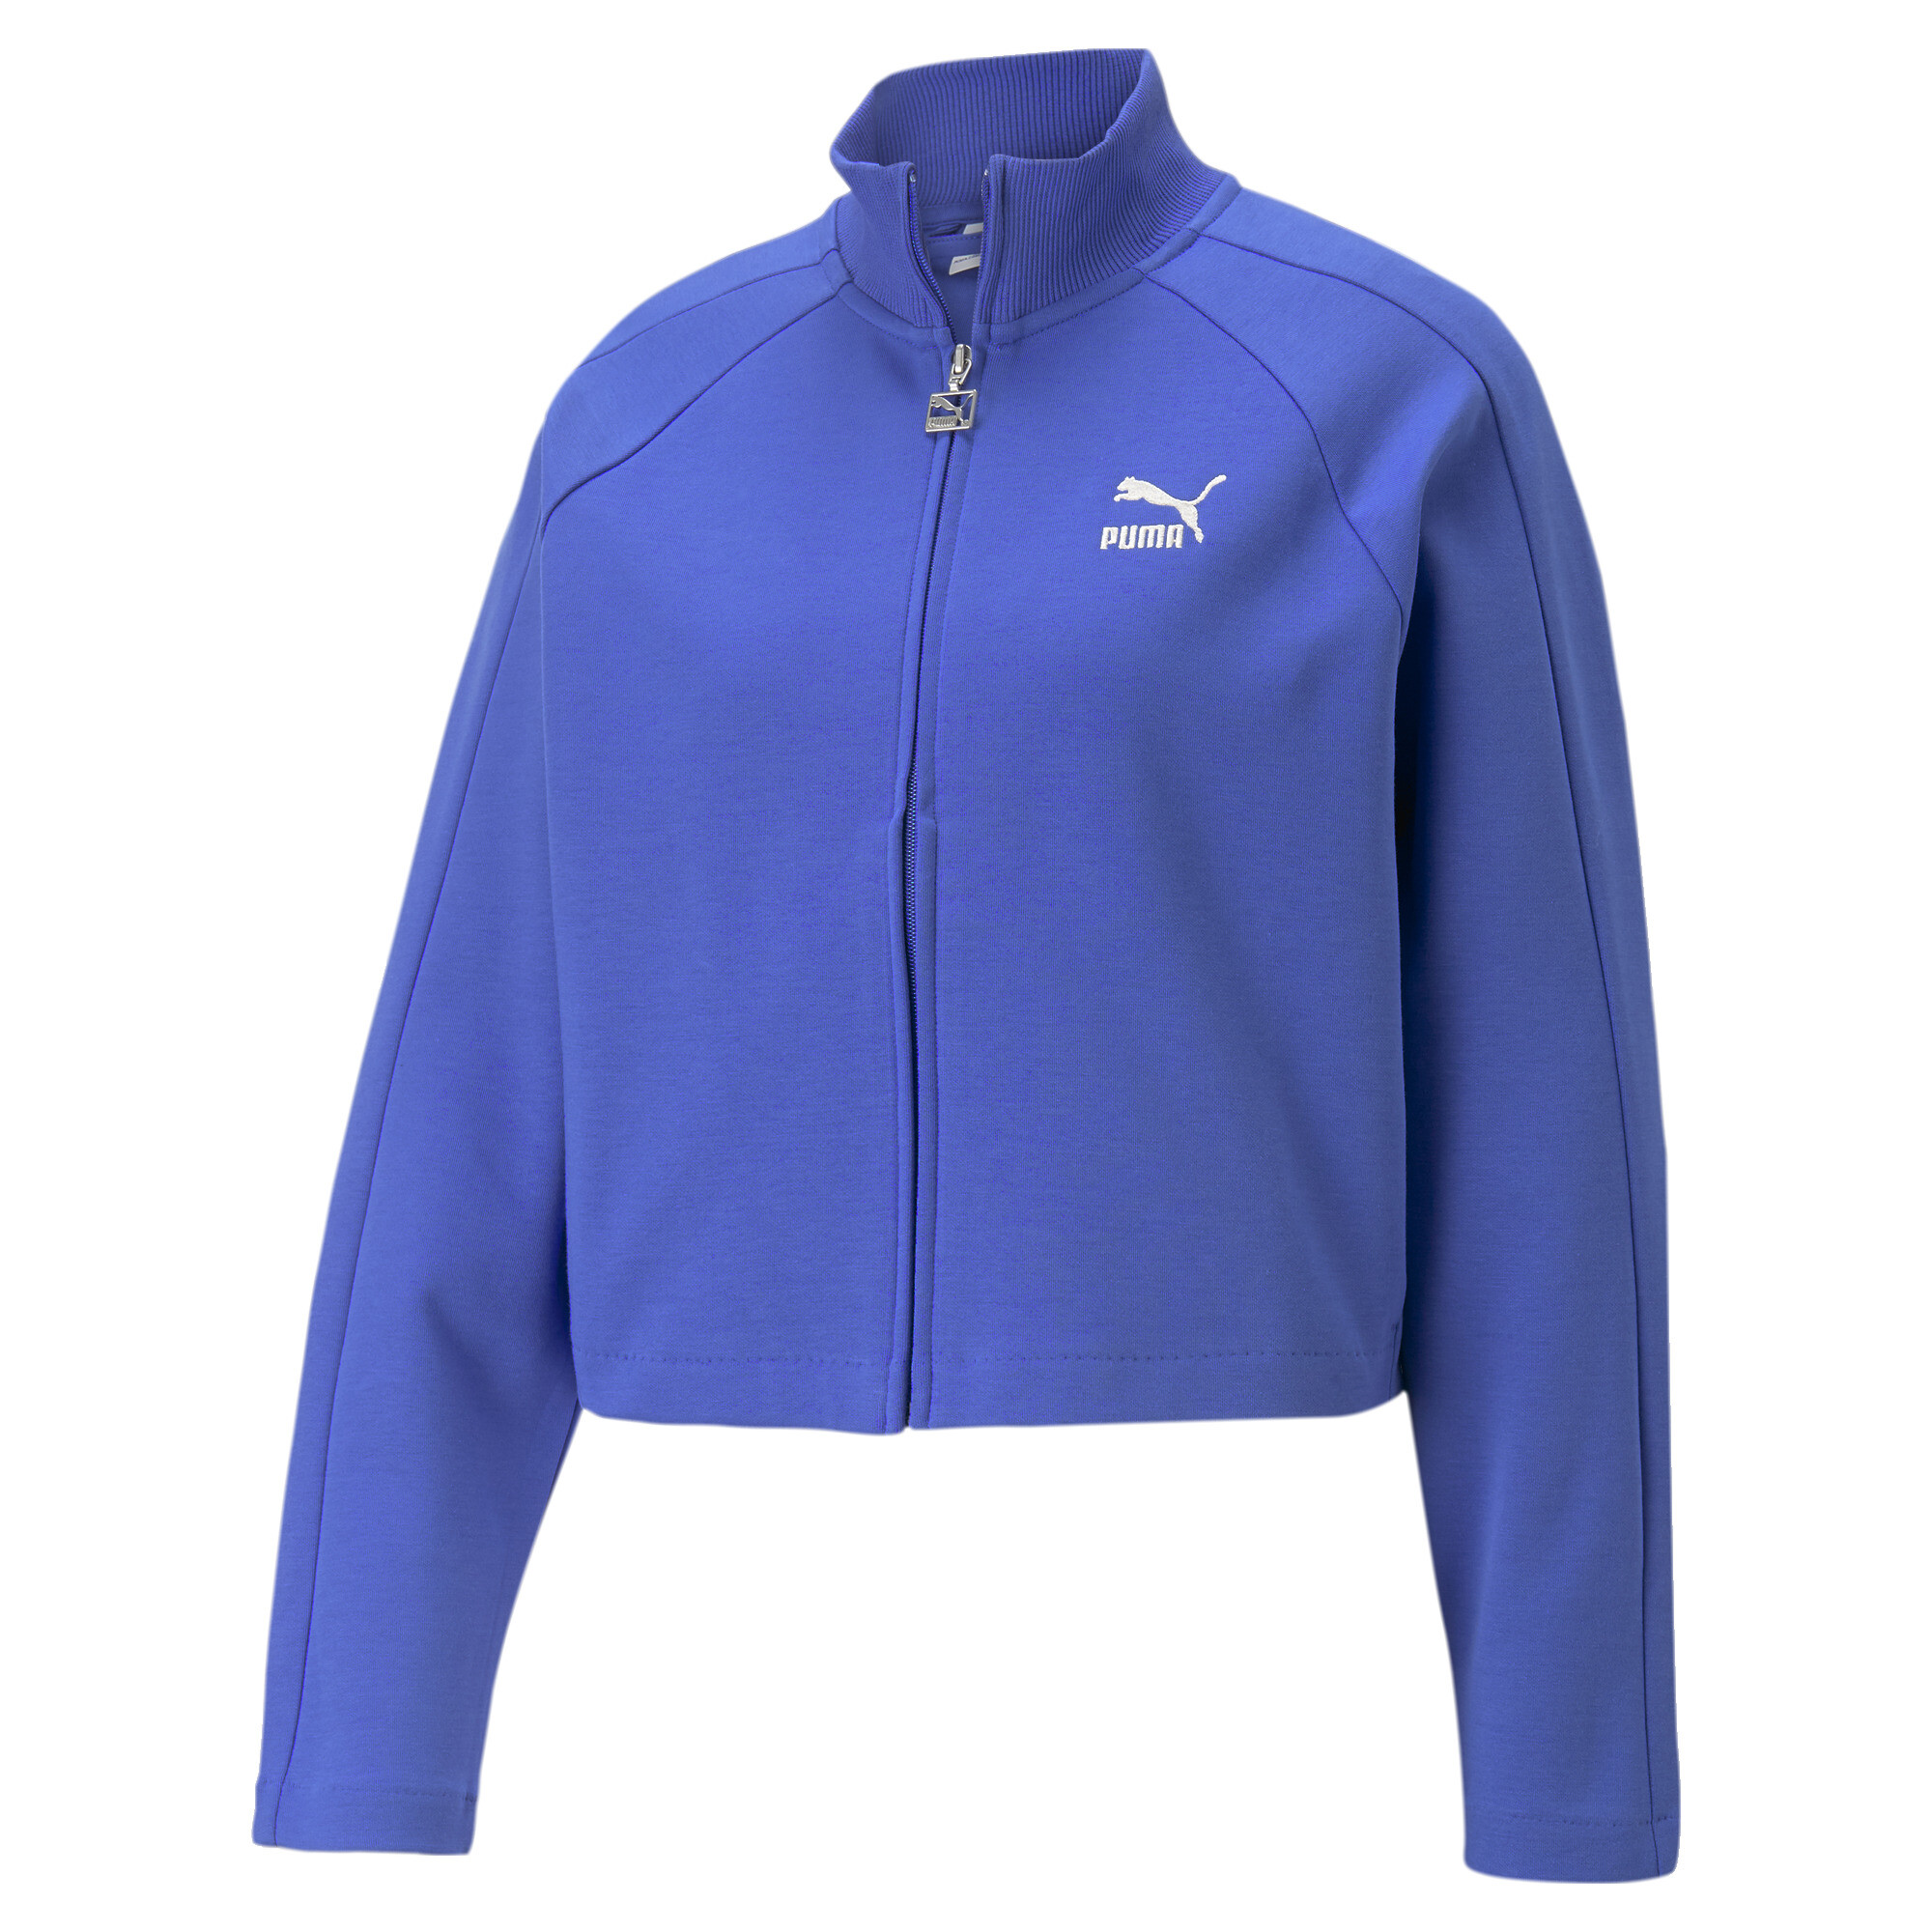 Women's PUMA T7 Track Jacket Women In Blue, Size Small